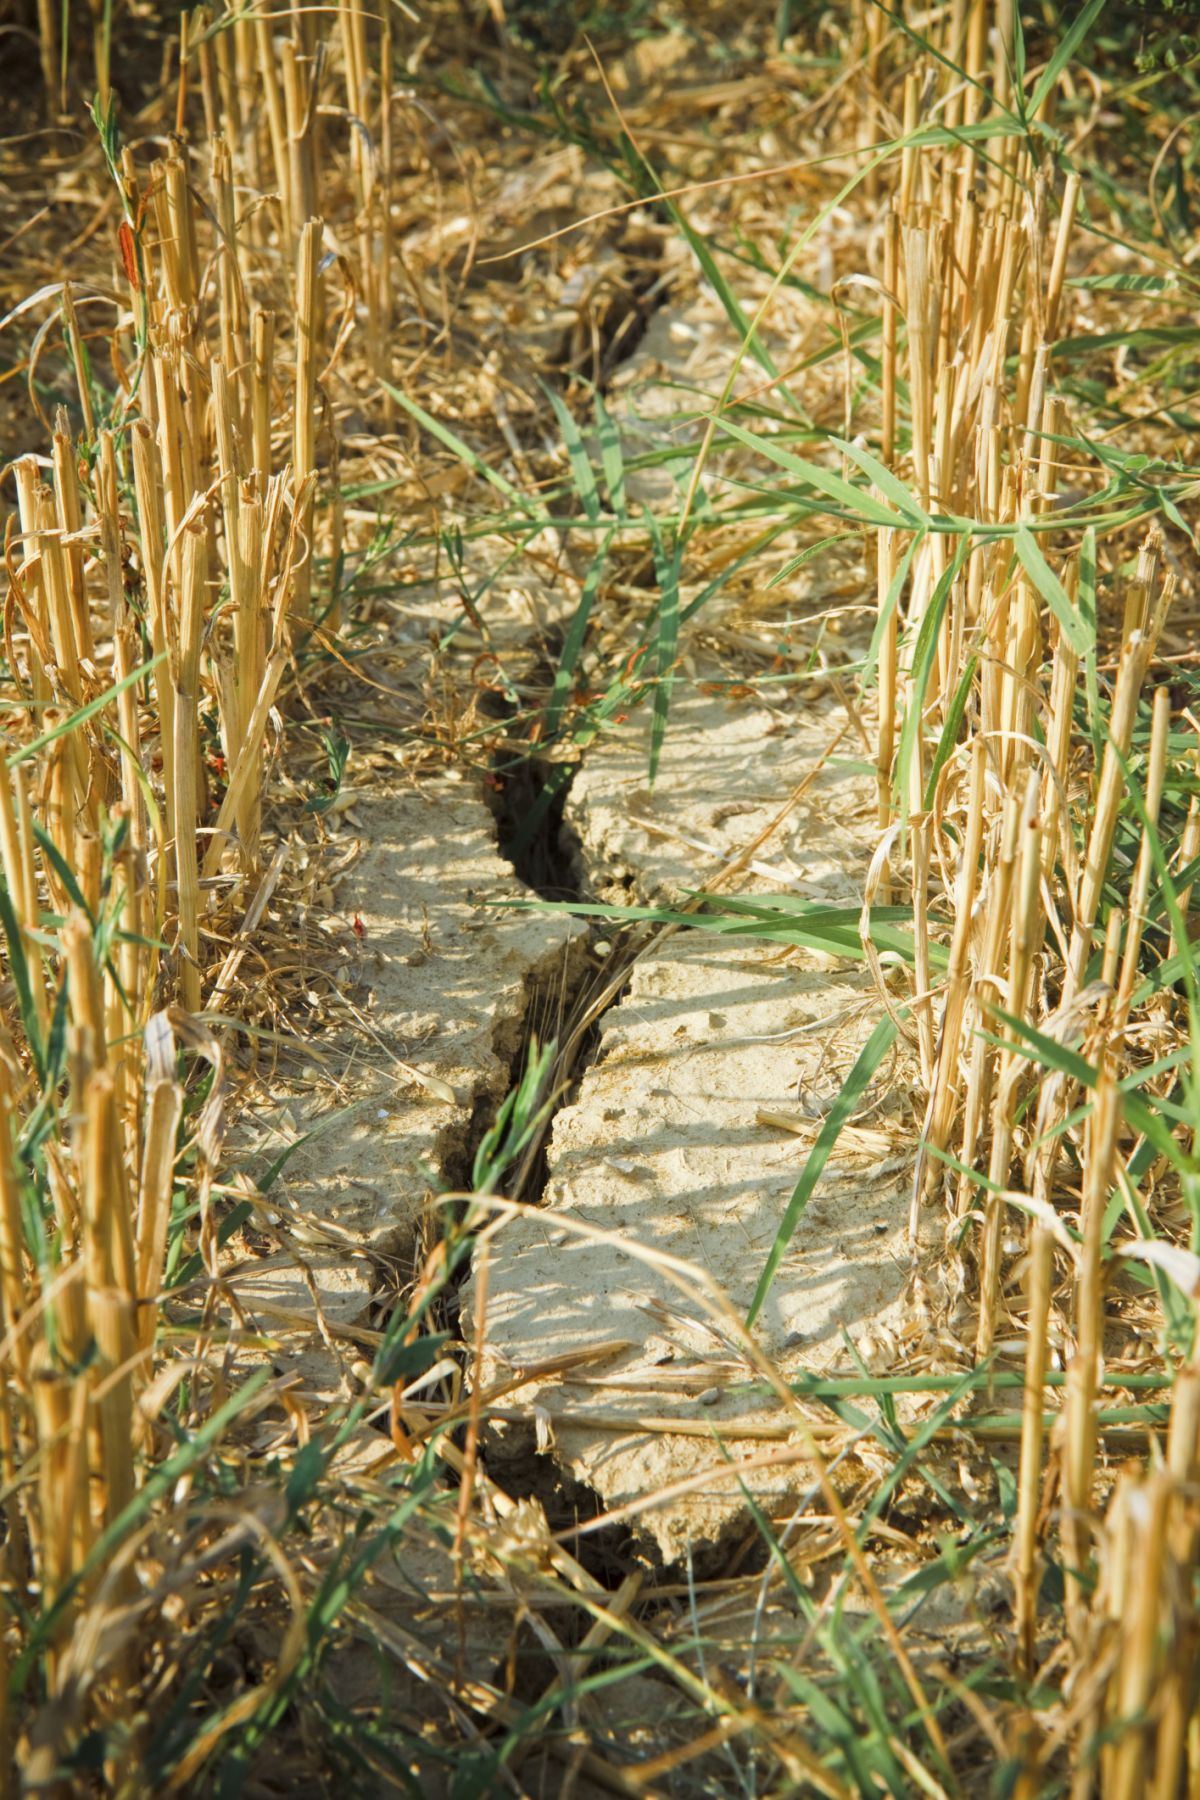 Ausgetrockneter Boden im Weizenfeld: Eine Zunahme der Dürren wird in den kommenden Jahren befürchtet – vor allem im südlichen Europa.